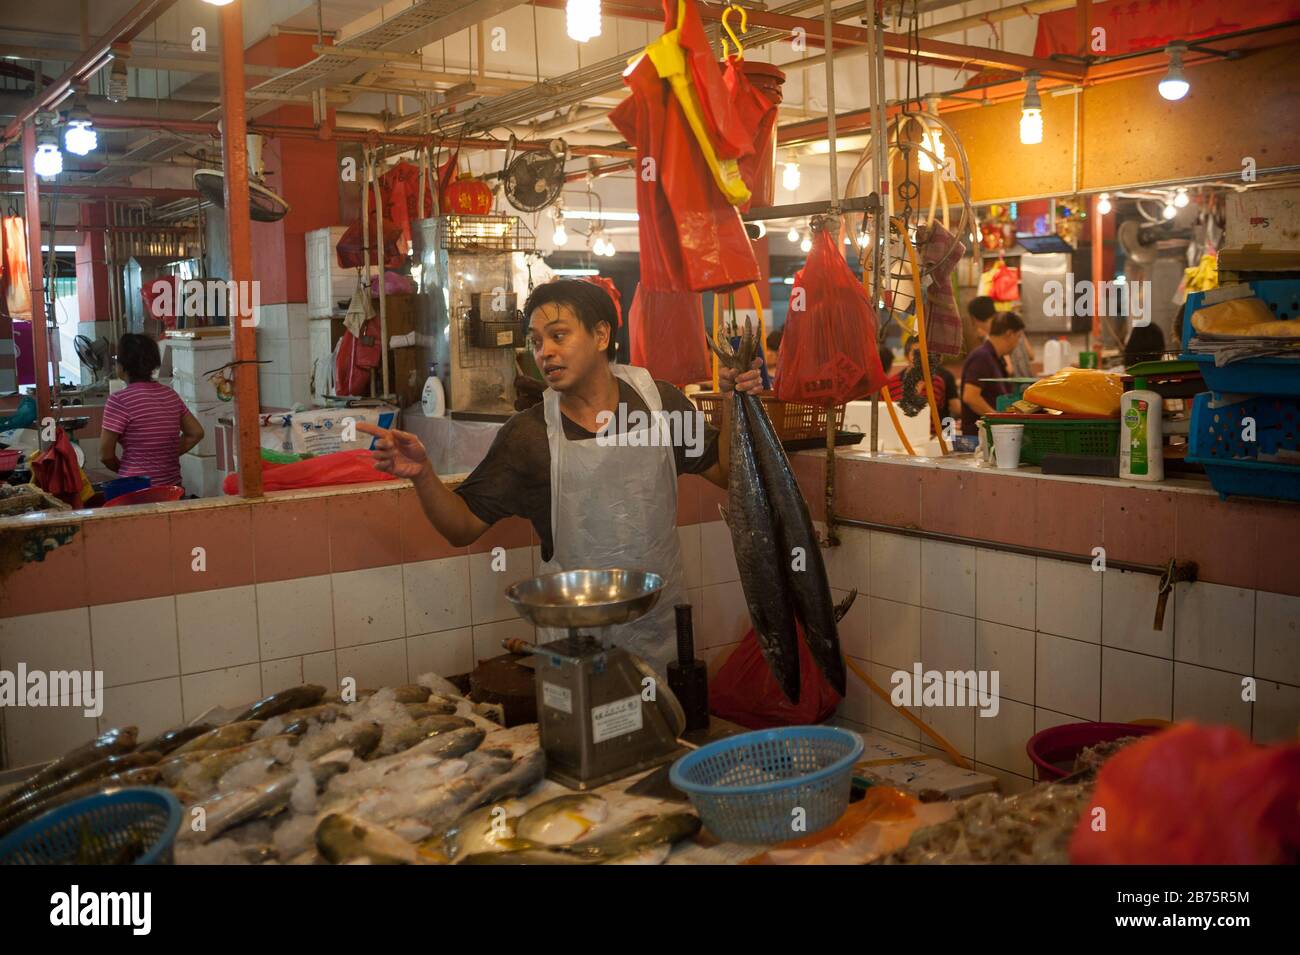 27.07.2017, Singapour, République de Singapour, Asie - un vendeur de poissons sur le marché de Chinatown. [traduction automatique] Banque D'Images